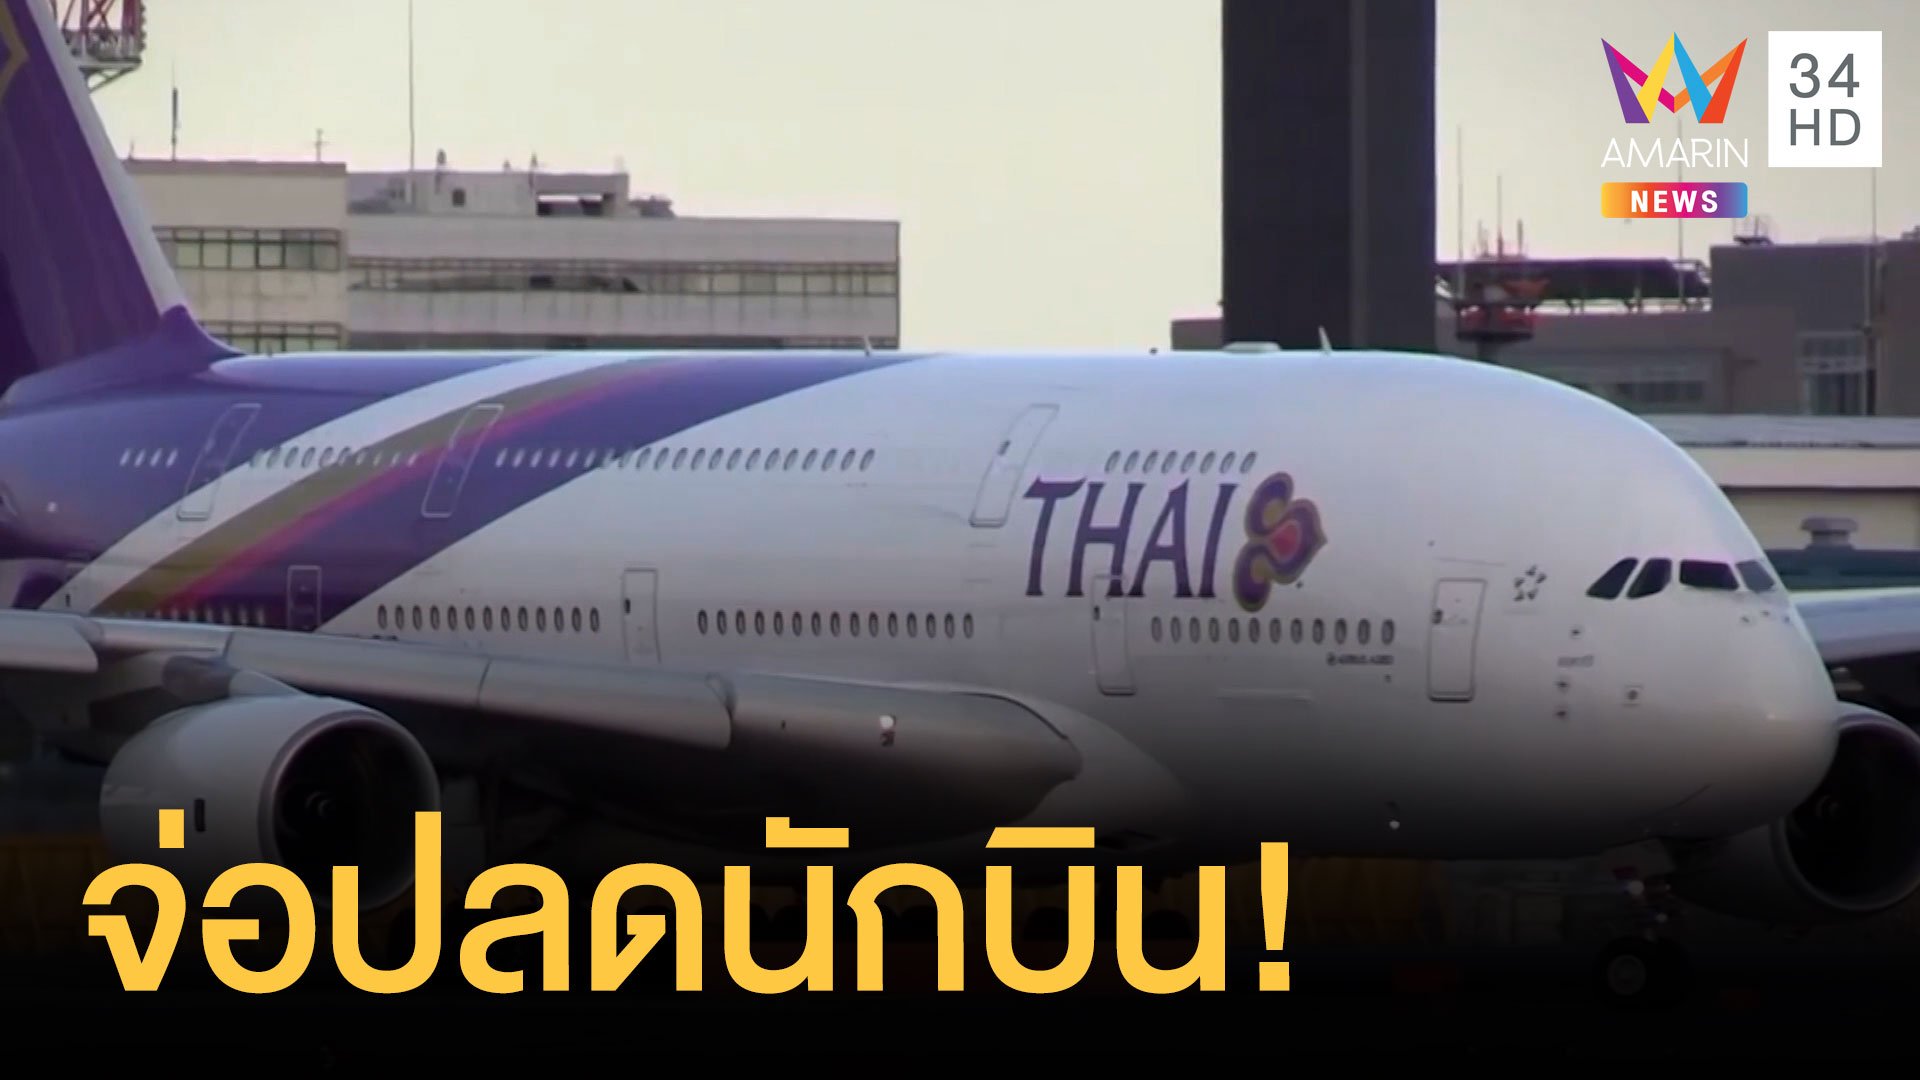 การบินไทยเตรียมปลดนักบิน ลดเงินเดือนพนักงาน | ข่าวอรุณอมรินทร์ | 7 ก.พ. 64 | AMARIN TVHD34